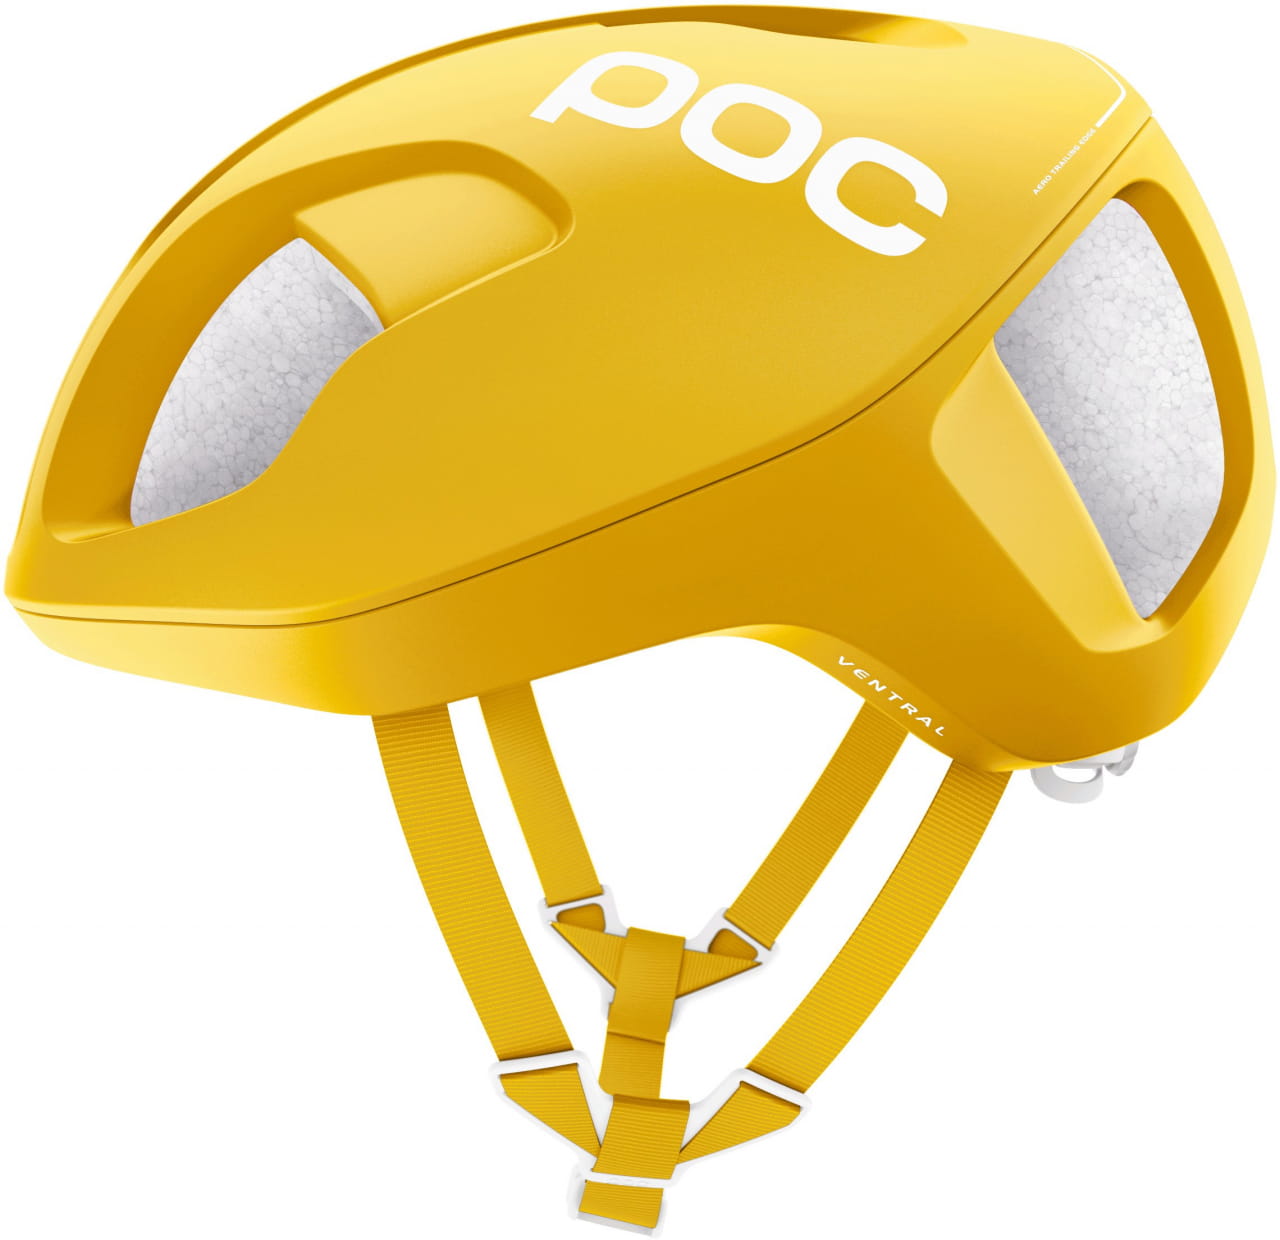 Cyklistická helma POC Ventral SPIN